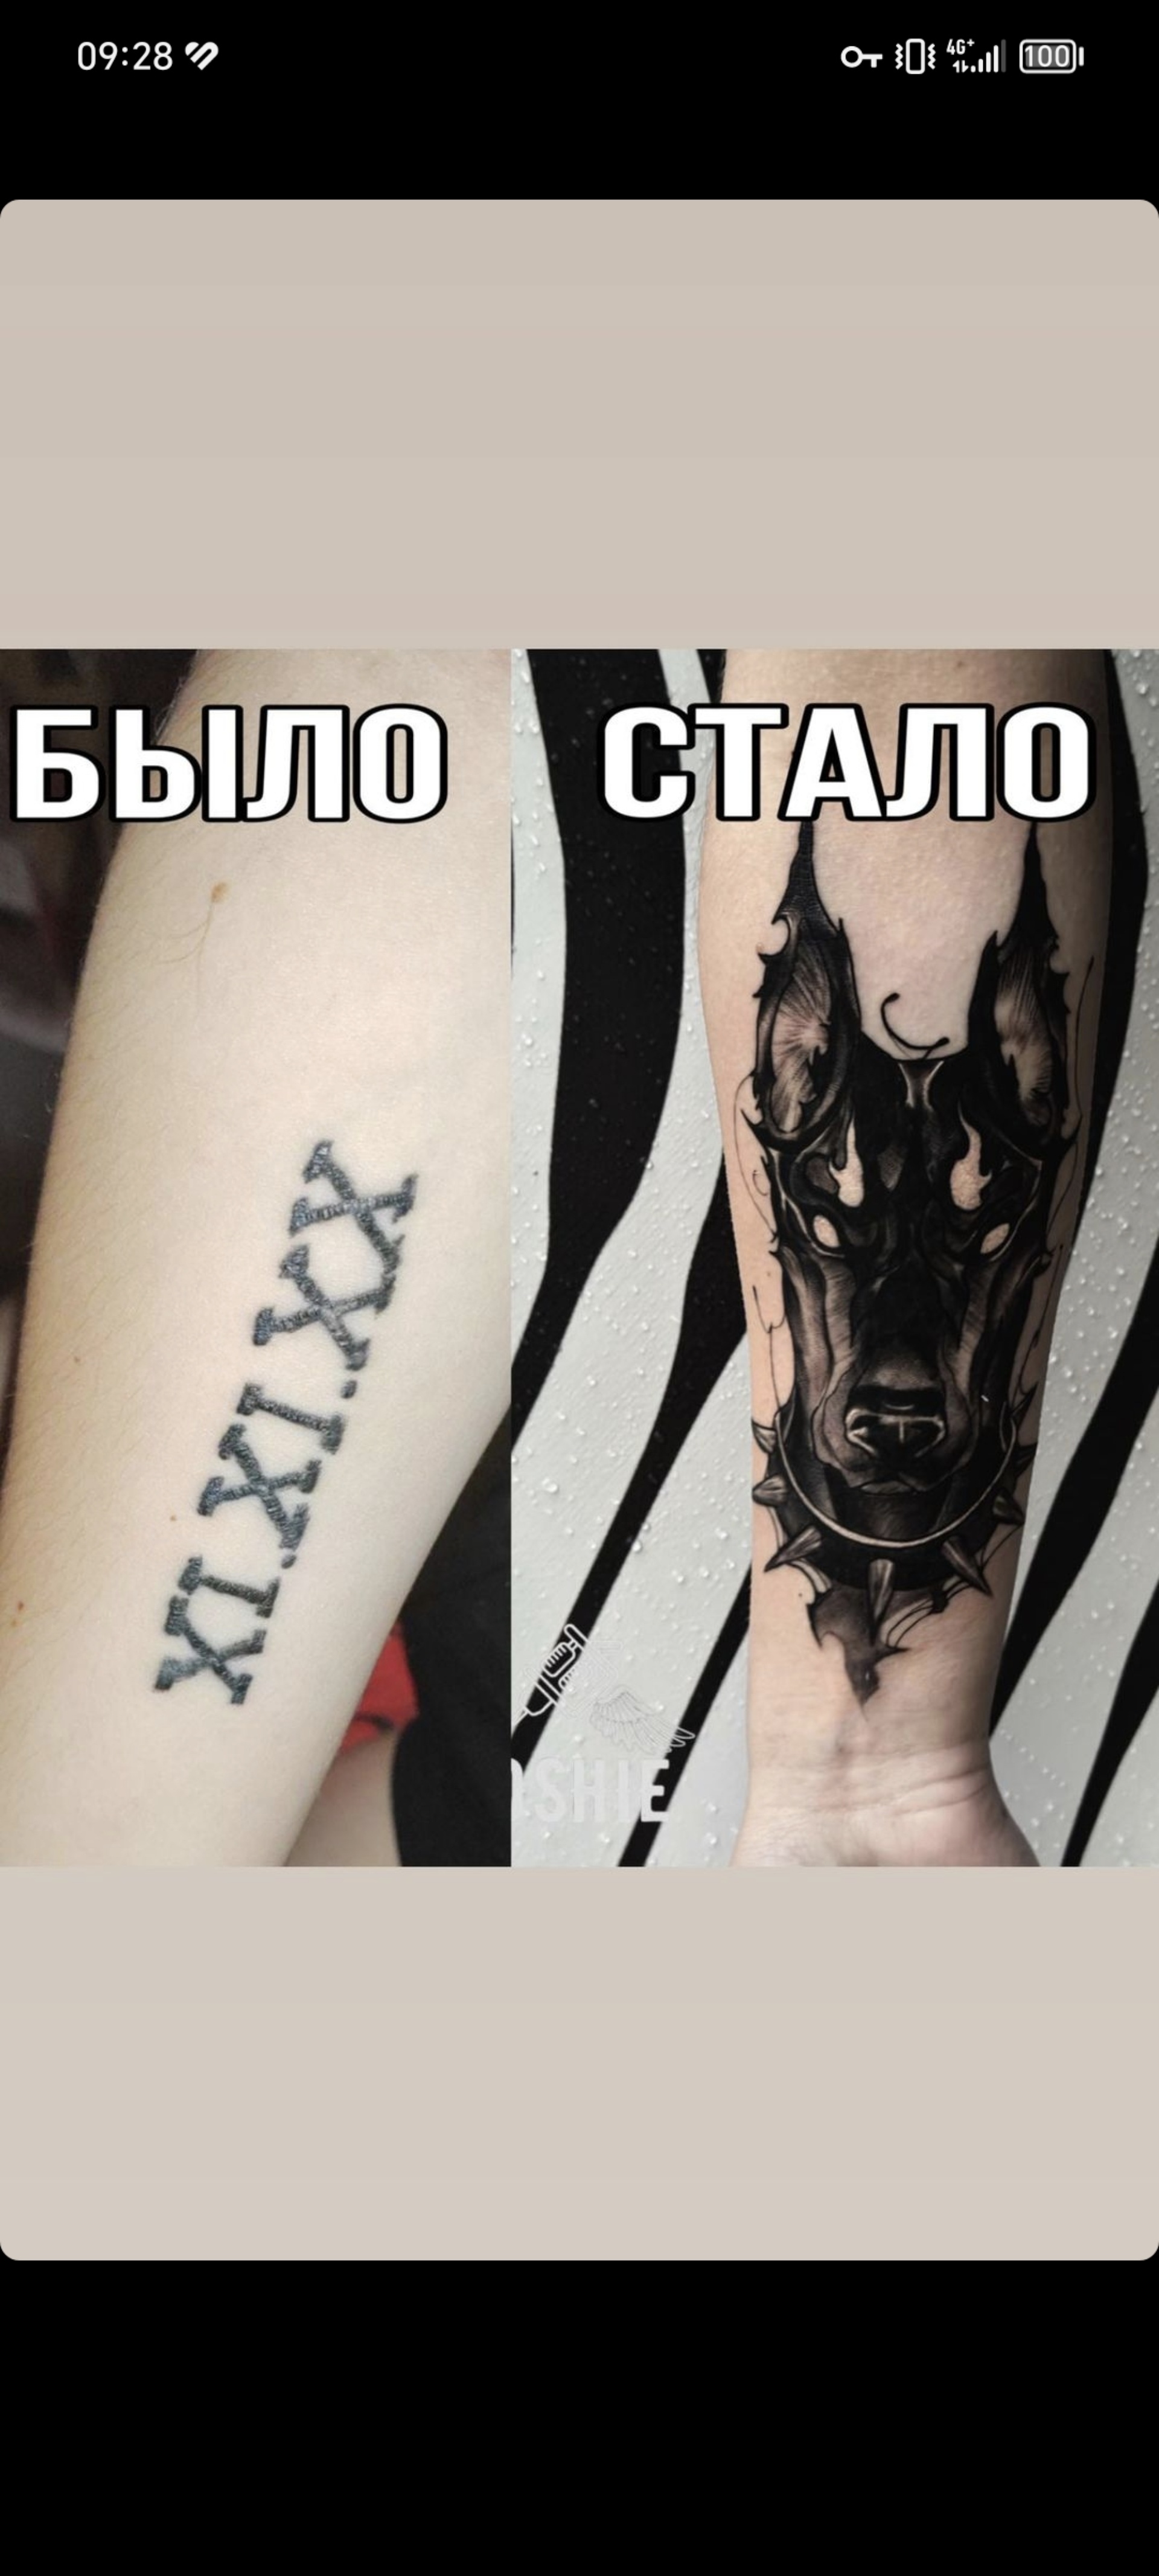 Тату волка: фото и идеи татуировок, значение и эскизы